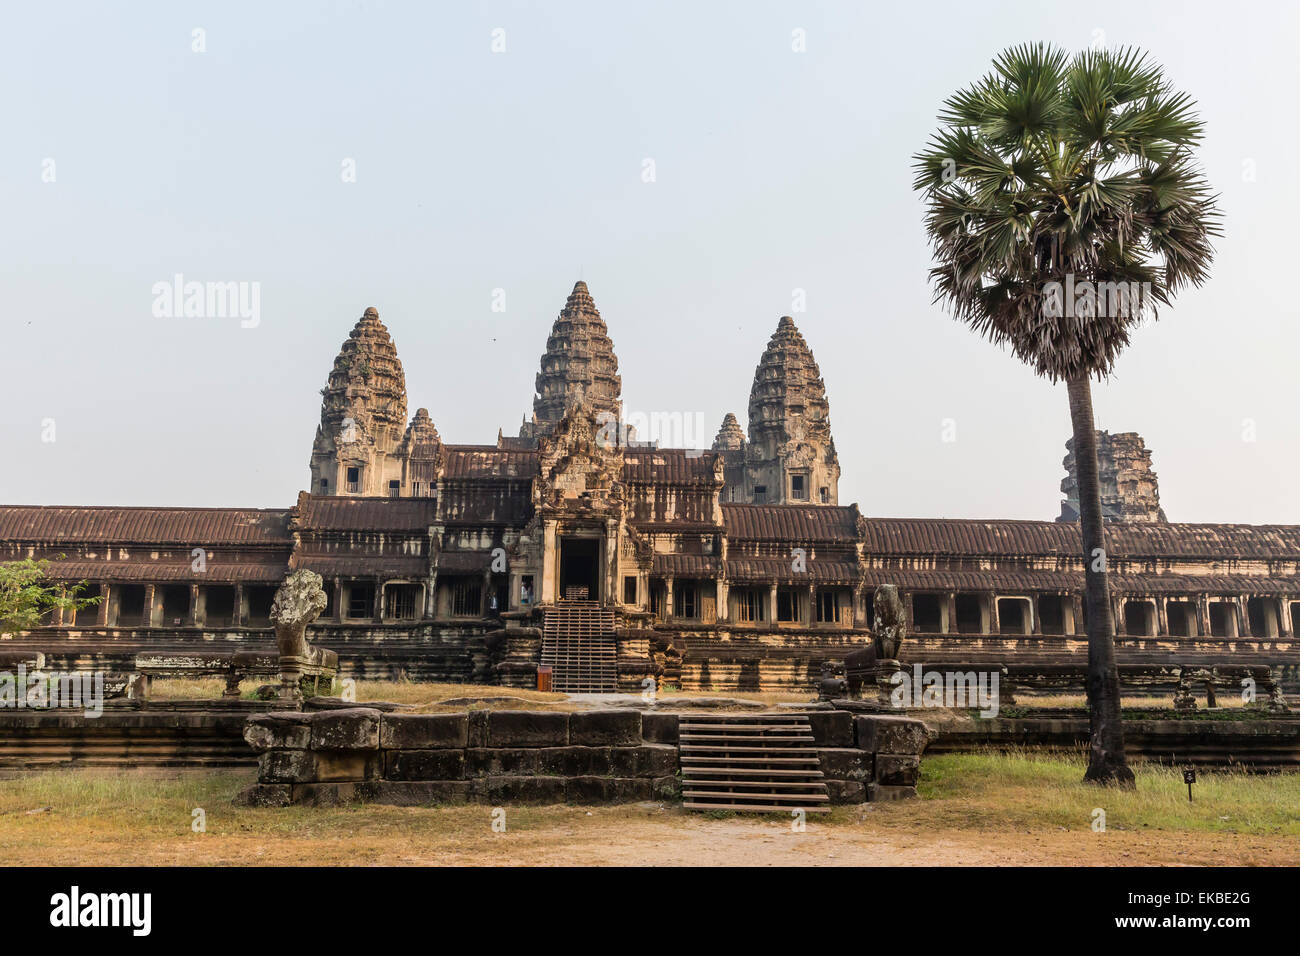 Entrée est de Angkor Wat, Angkor, Site du patrimoine mondial de l'UNESCO, Siem Reap, Cambodge, Indochine, Asie du Sud-Est, l'Asie Banque D'Images